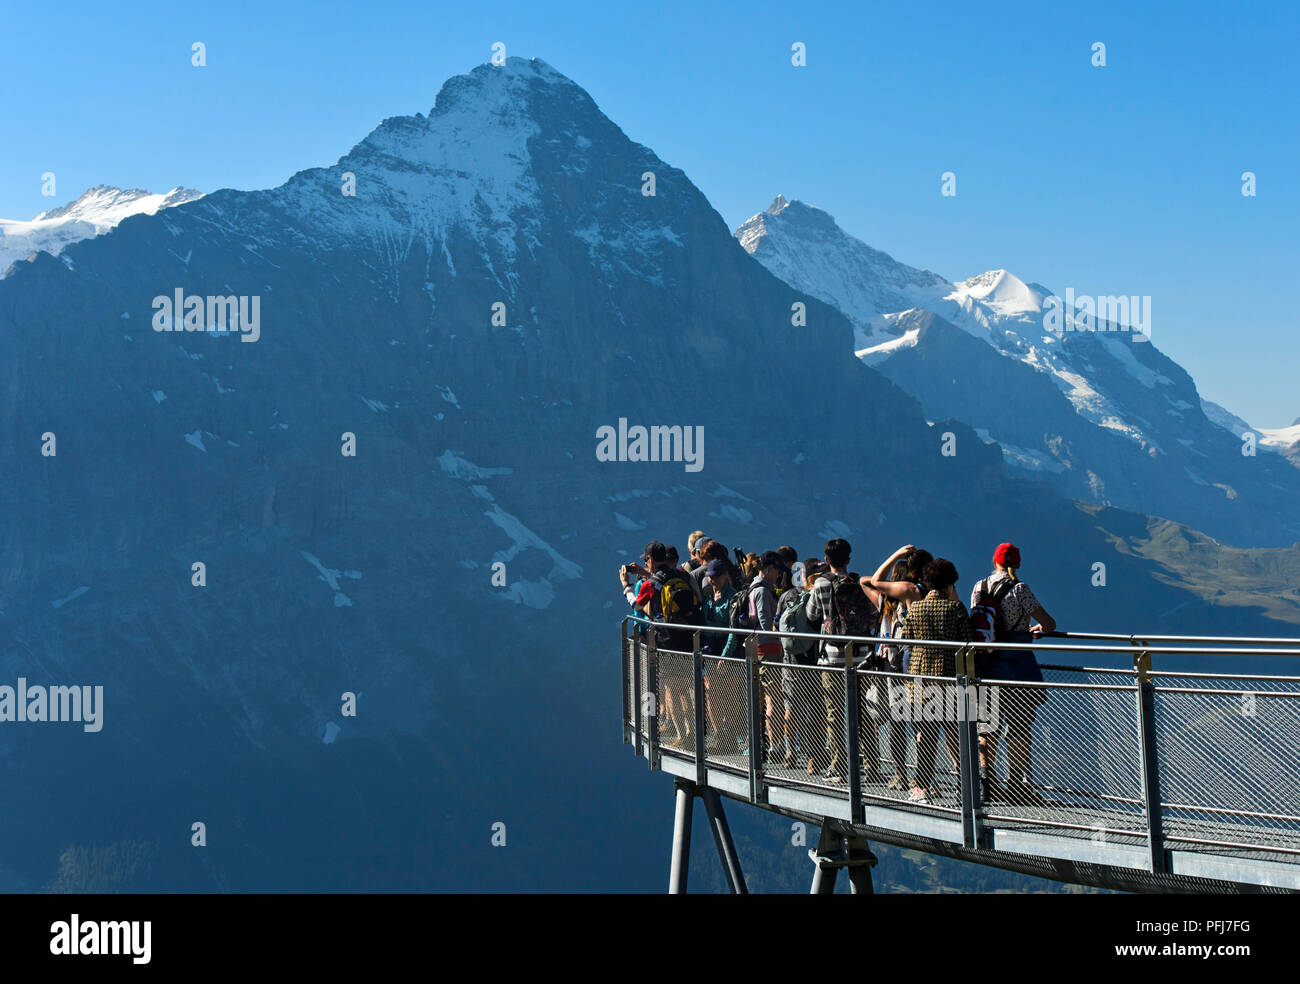 Los turistas en la plataforma mirador mirando el Eiger northface, primero Cliff Walk por Tissot, Grindelwald, Suiza Foto de stock